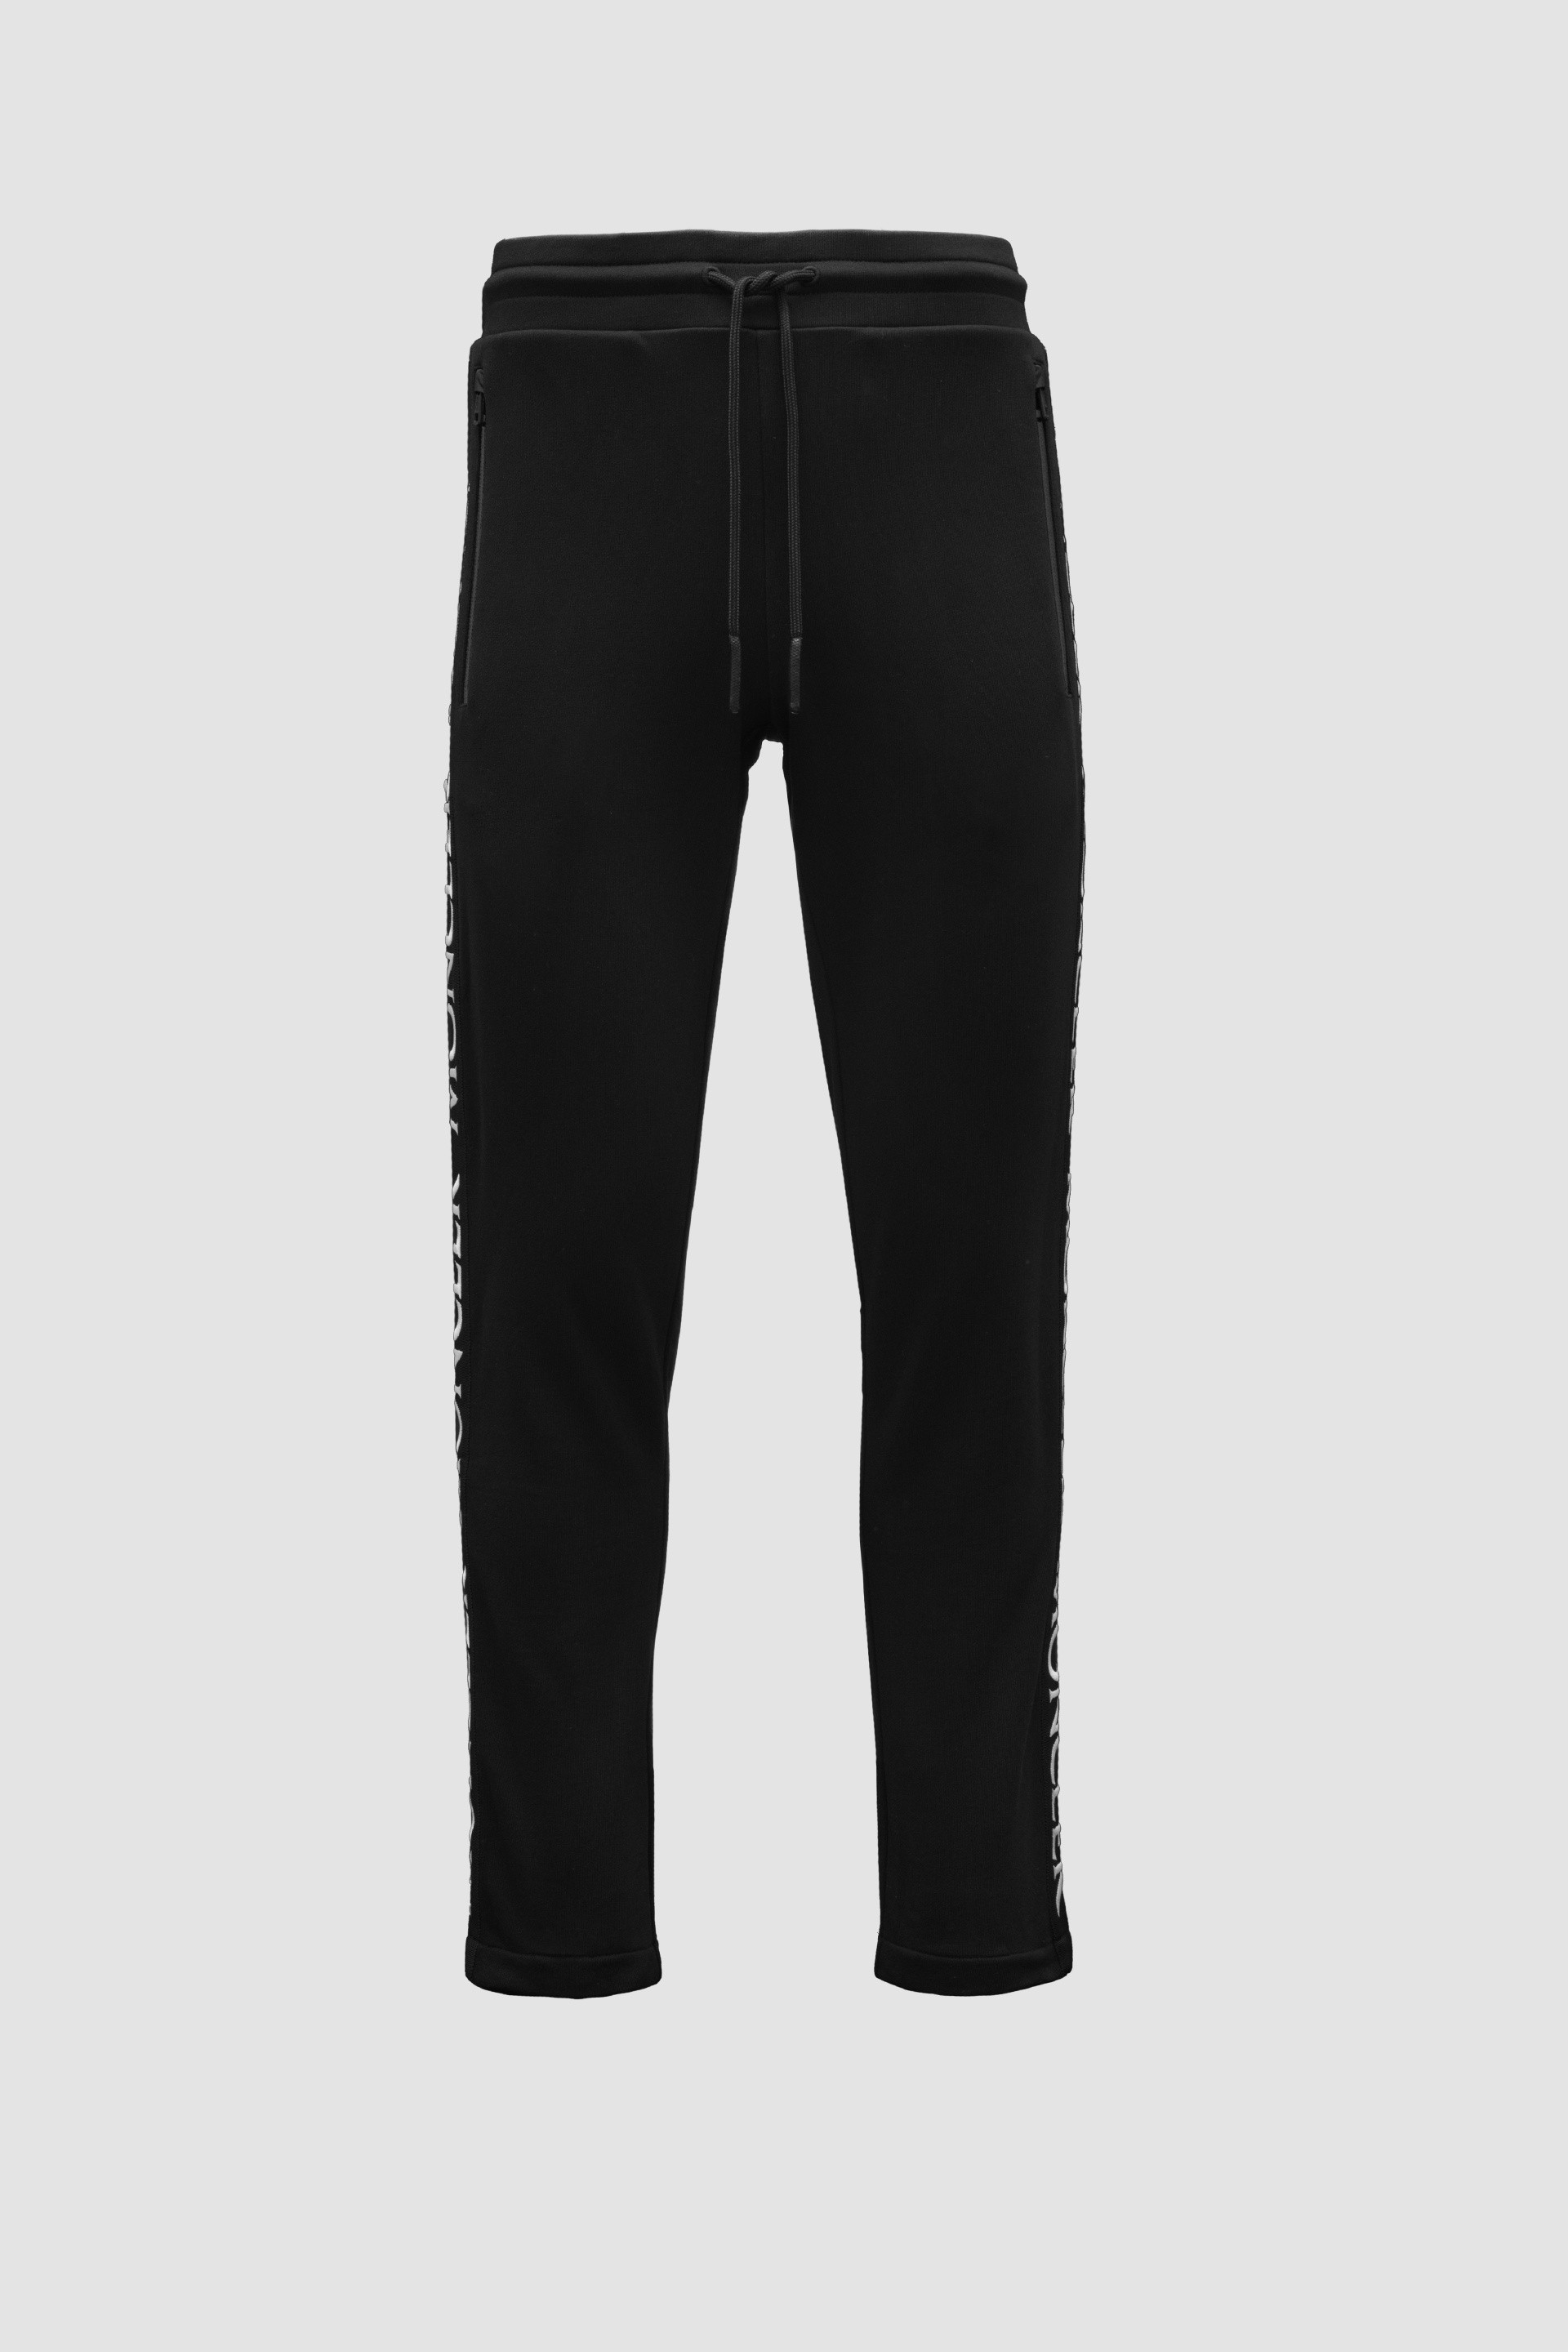 Shop MONCLER 2021-22FW M-XXL ◇ MONCLER PANTALONE Side Logo Sweatpants Black  Men's (091 8H000 15 V8183, 091-8H00015-V8183, PANTALONE) by micce